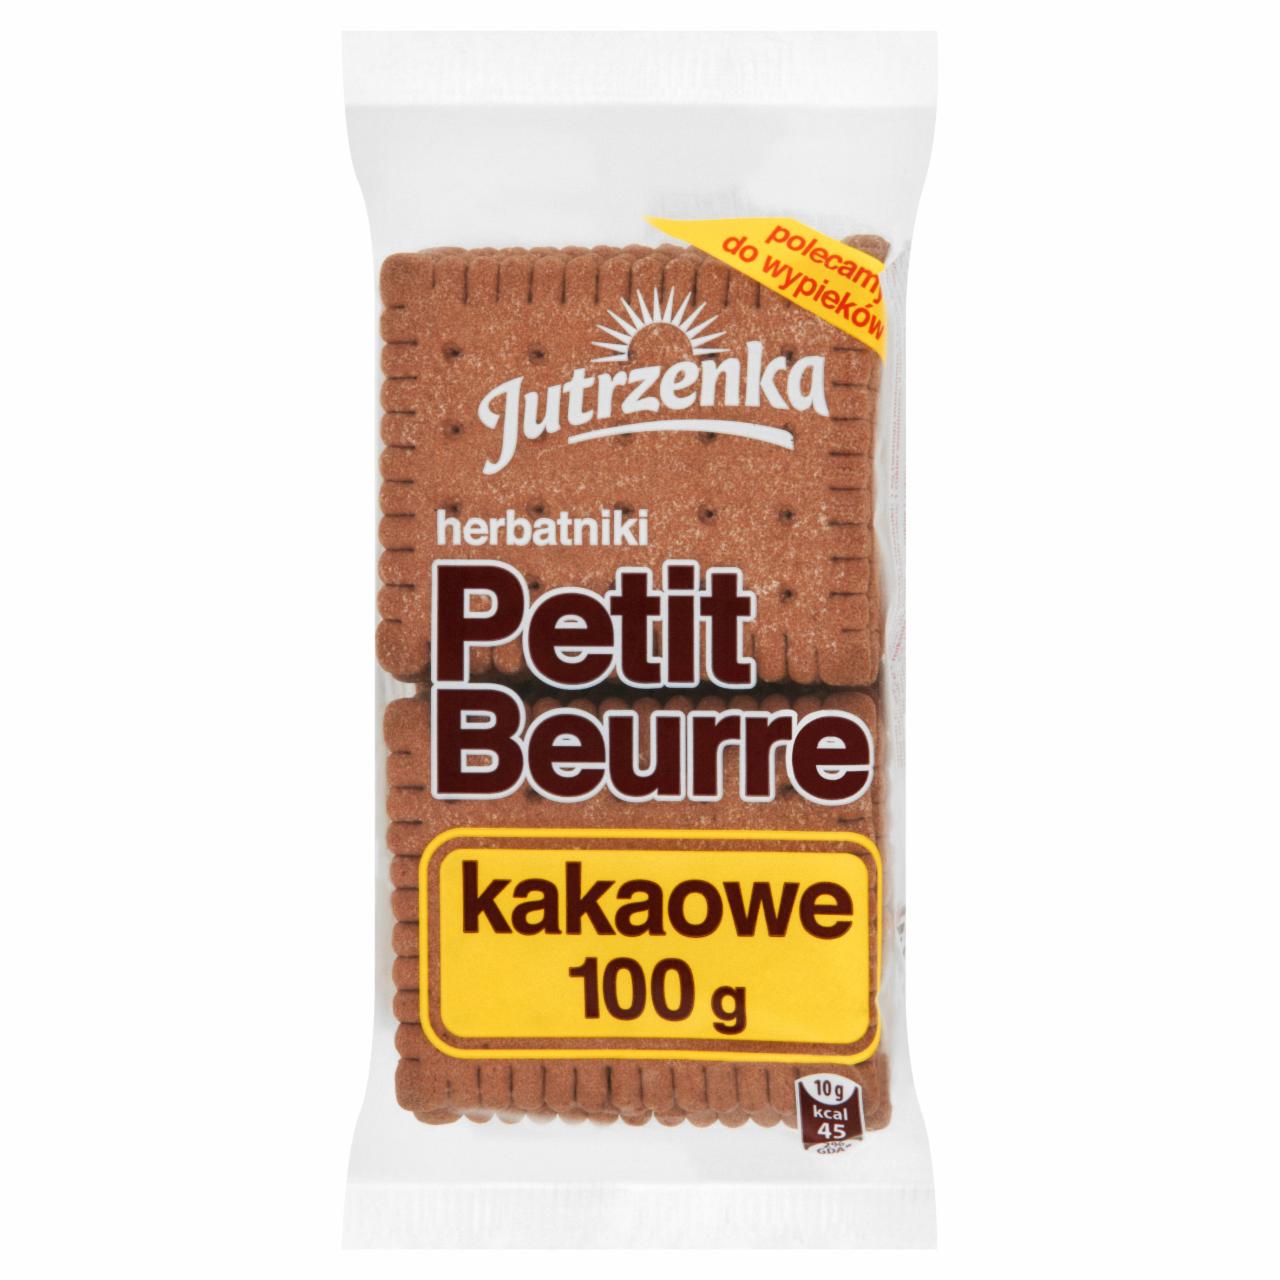 Zdjęcia - Jutrzenka Petit Beurre Herbatniki kakaowe 100 g